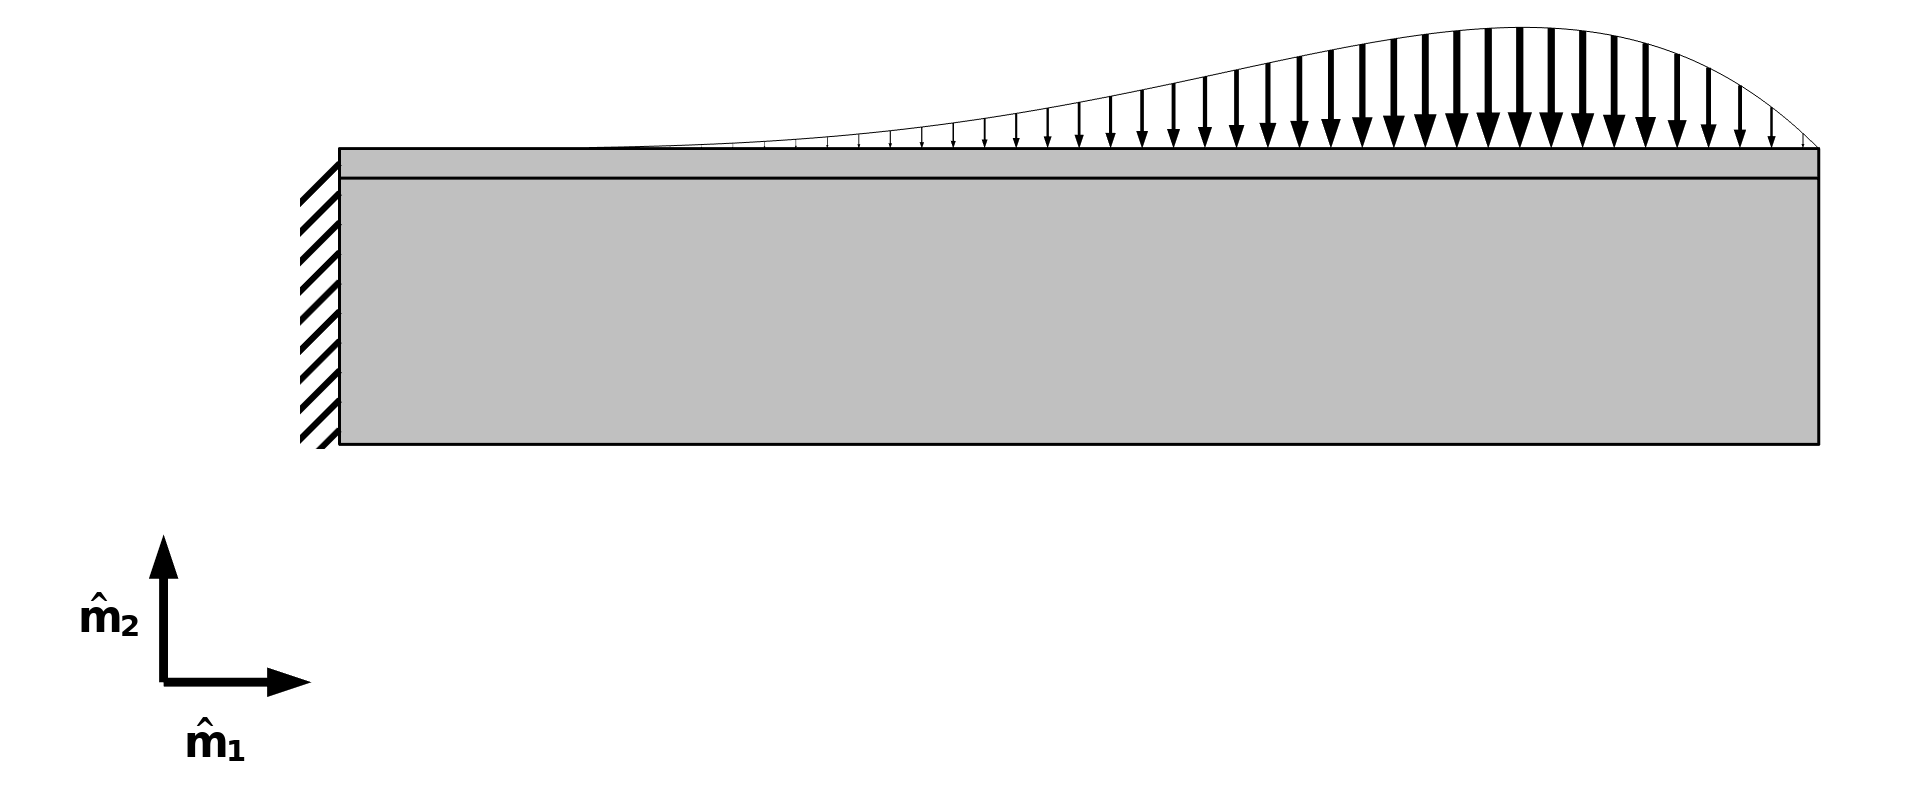 一个铝梁模型，其中左端是固定的，顶部边界承受分布式载荷。